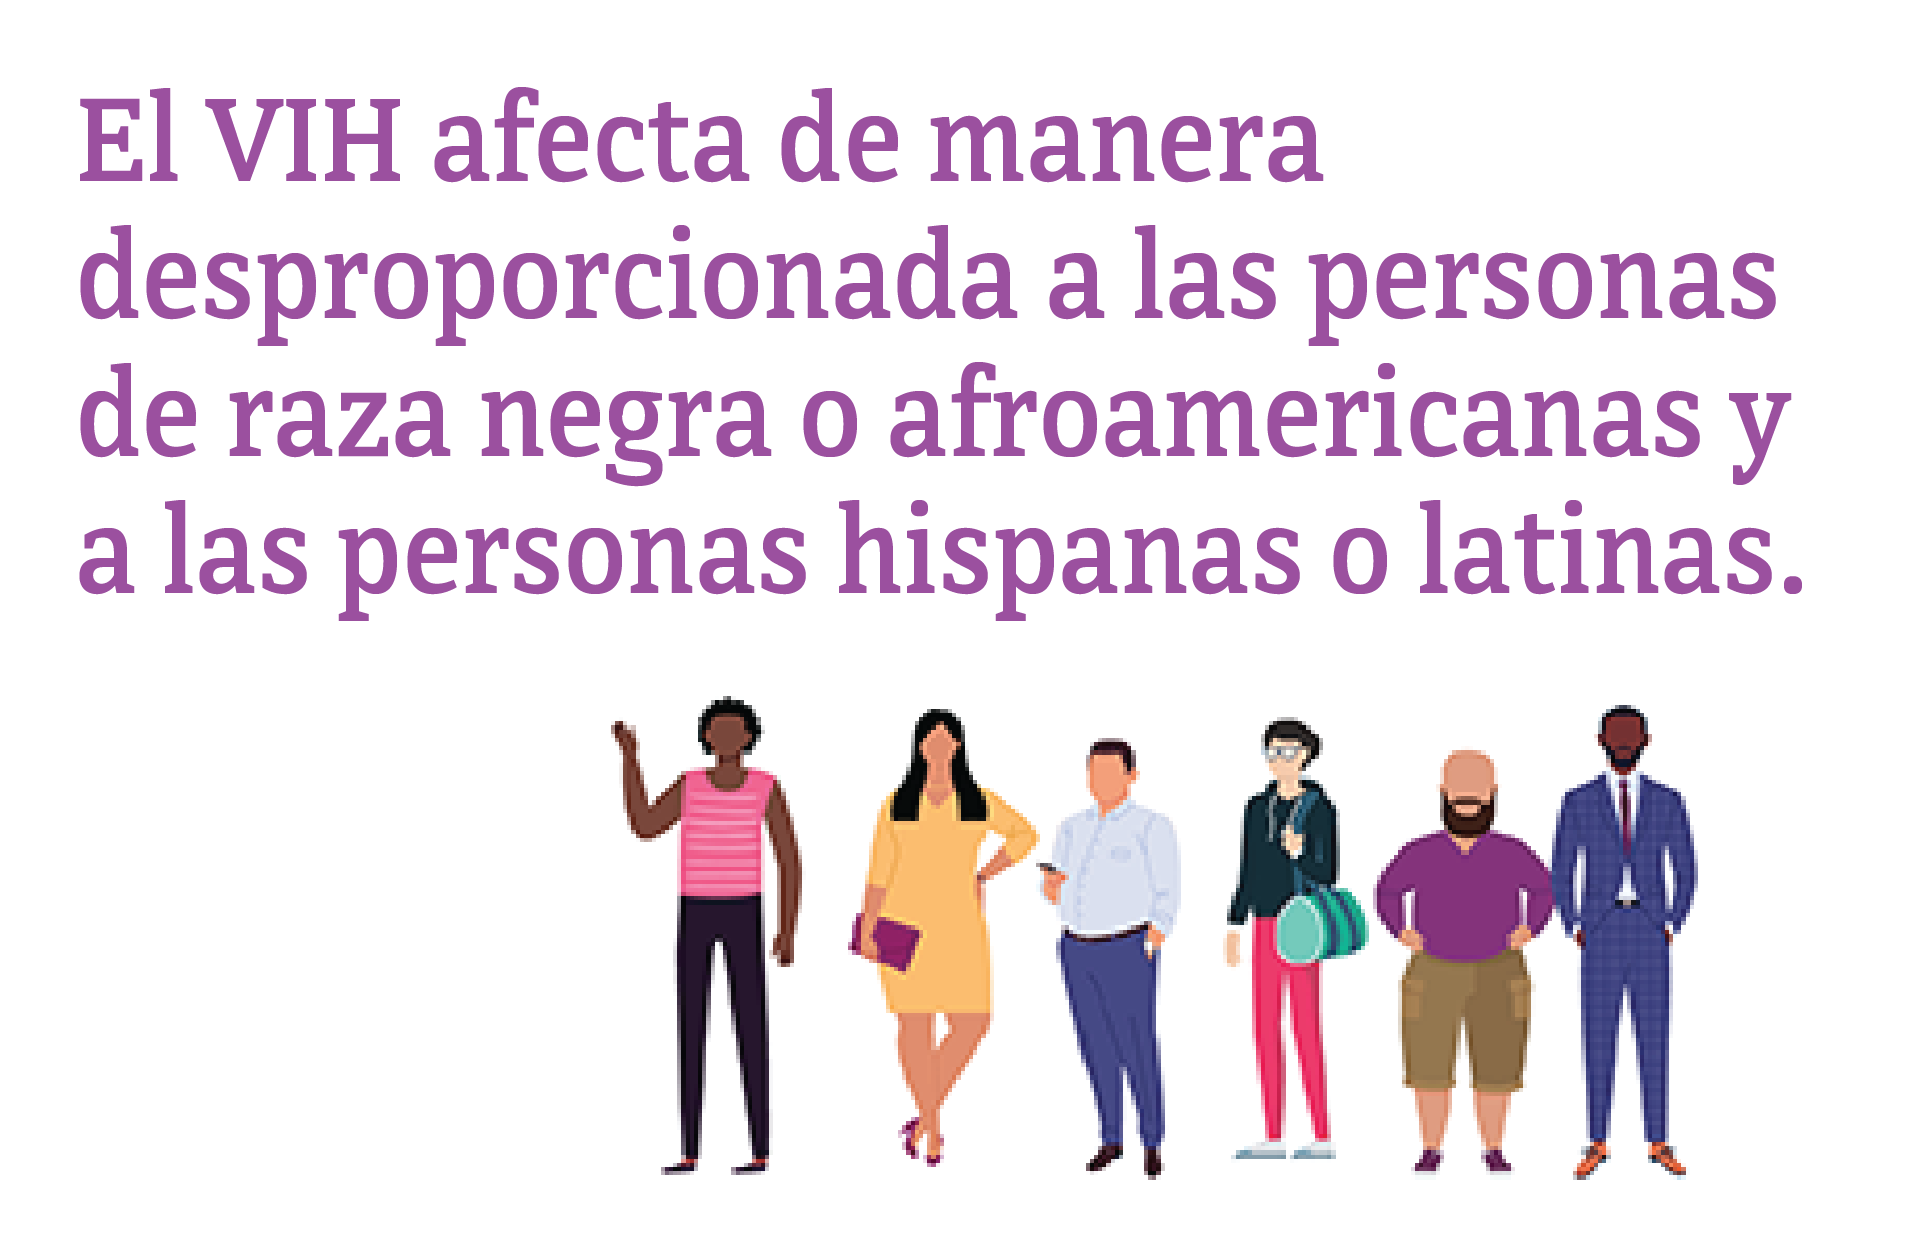 El VIH afecta de manera desproporcionada a las personas de raza negra o afroamericanas y a las personas hispanas o latinas.